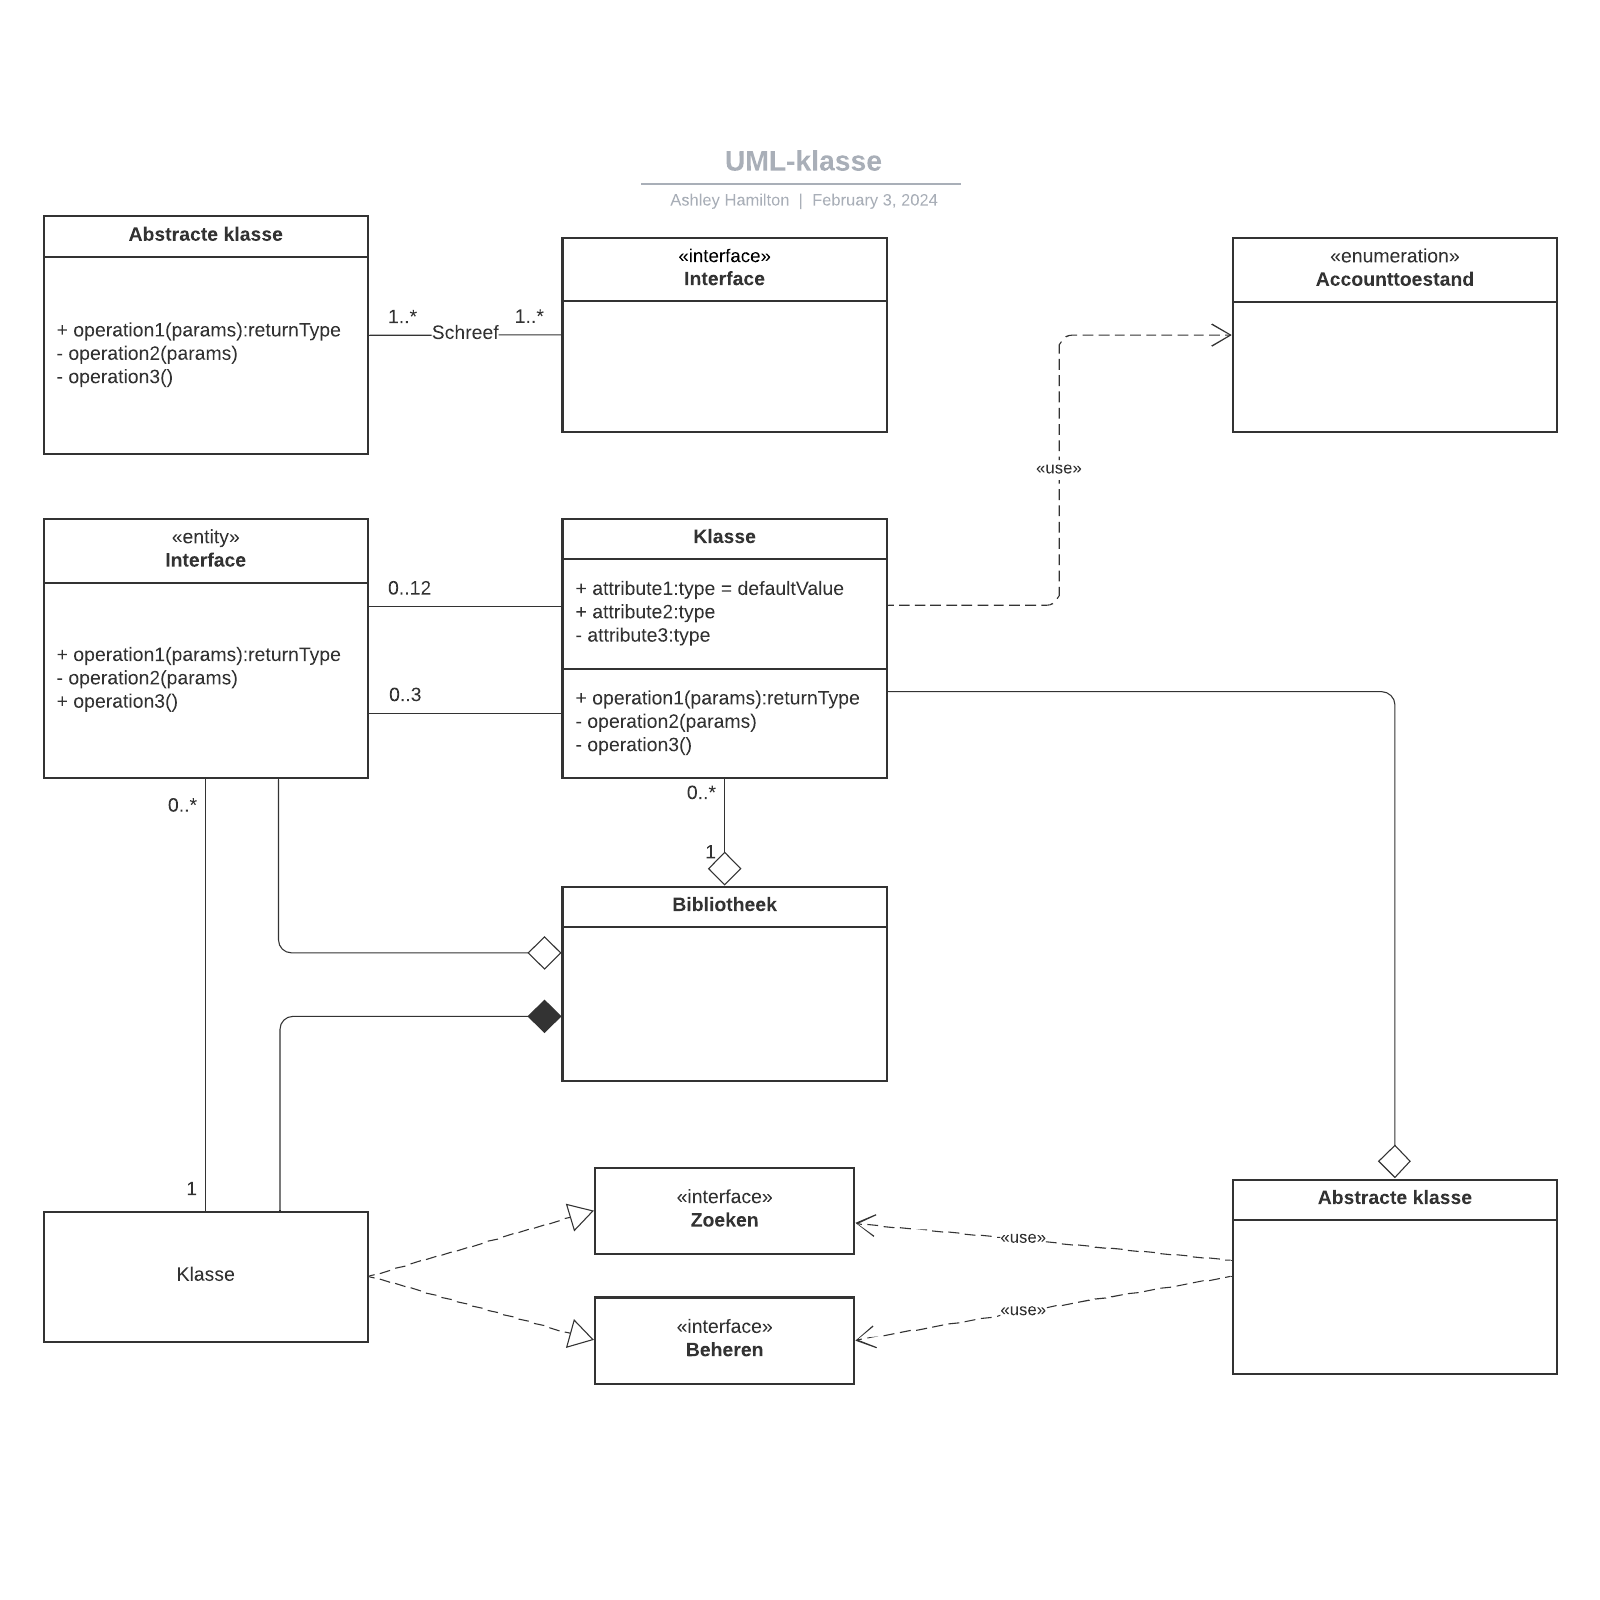 UML-klasse example